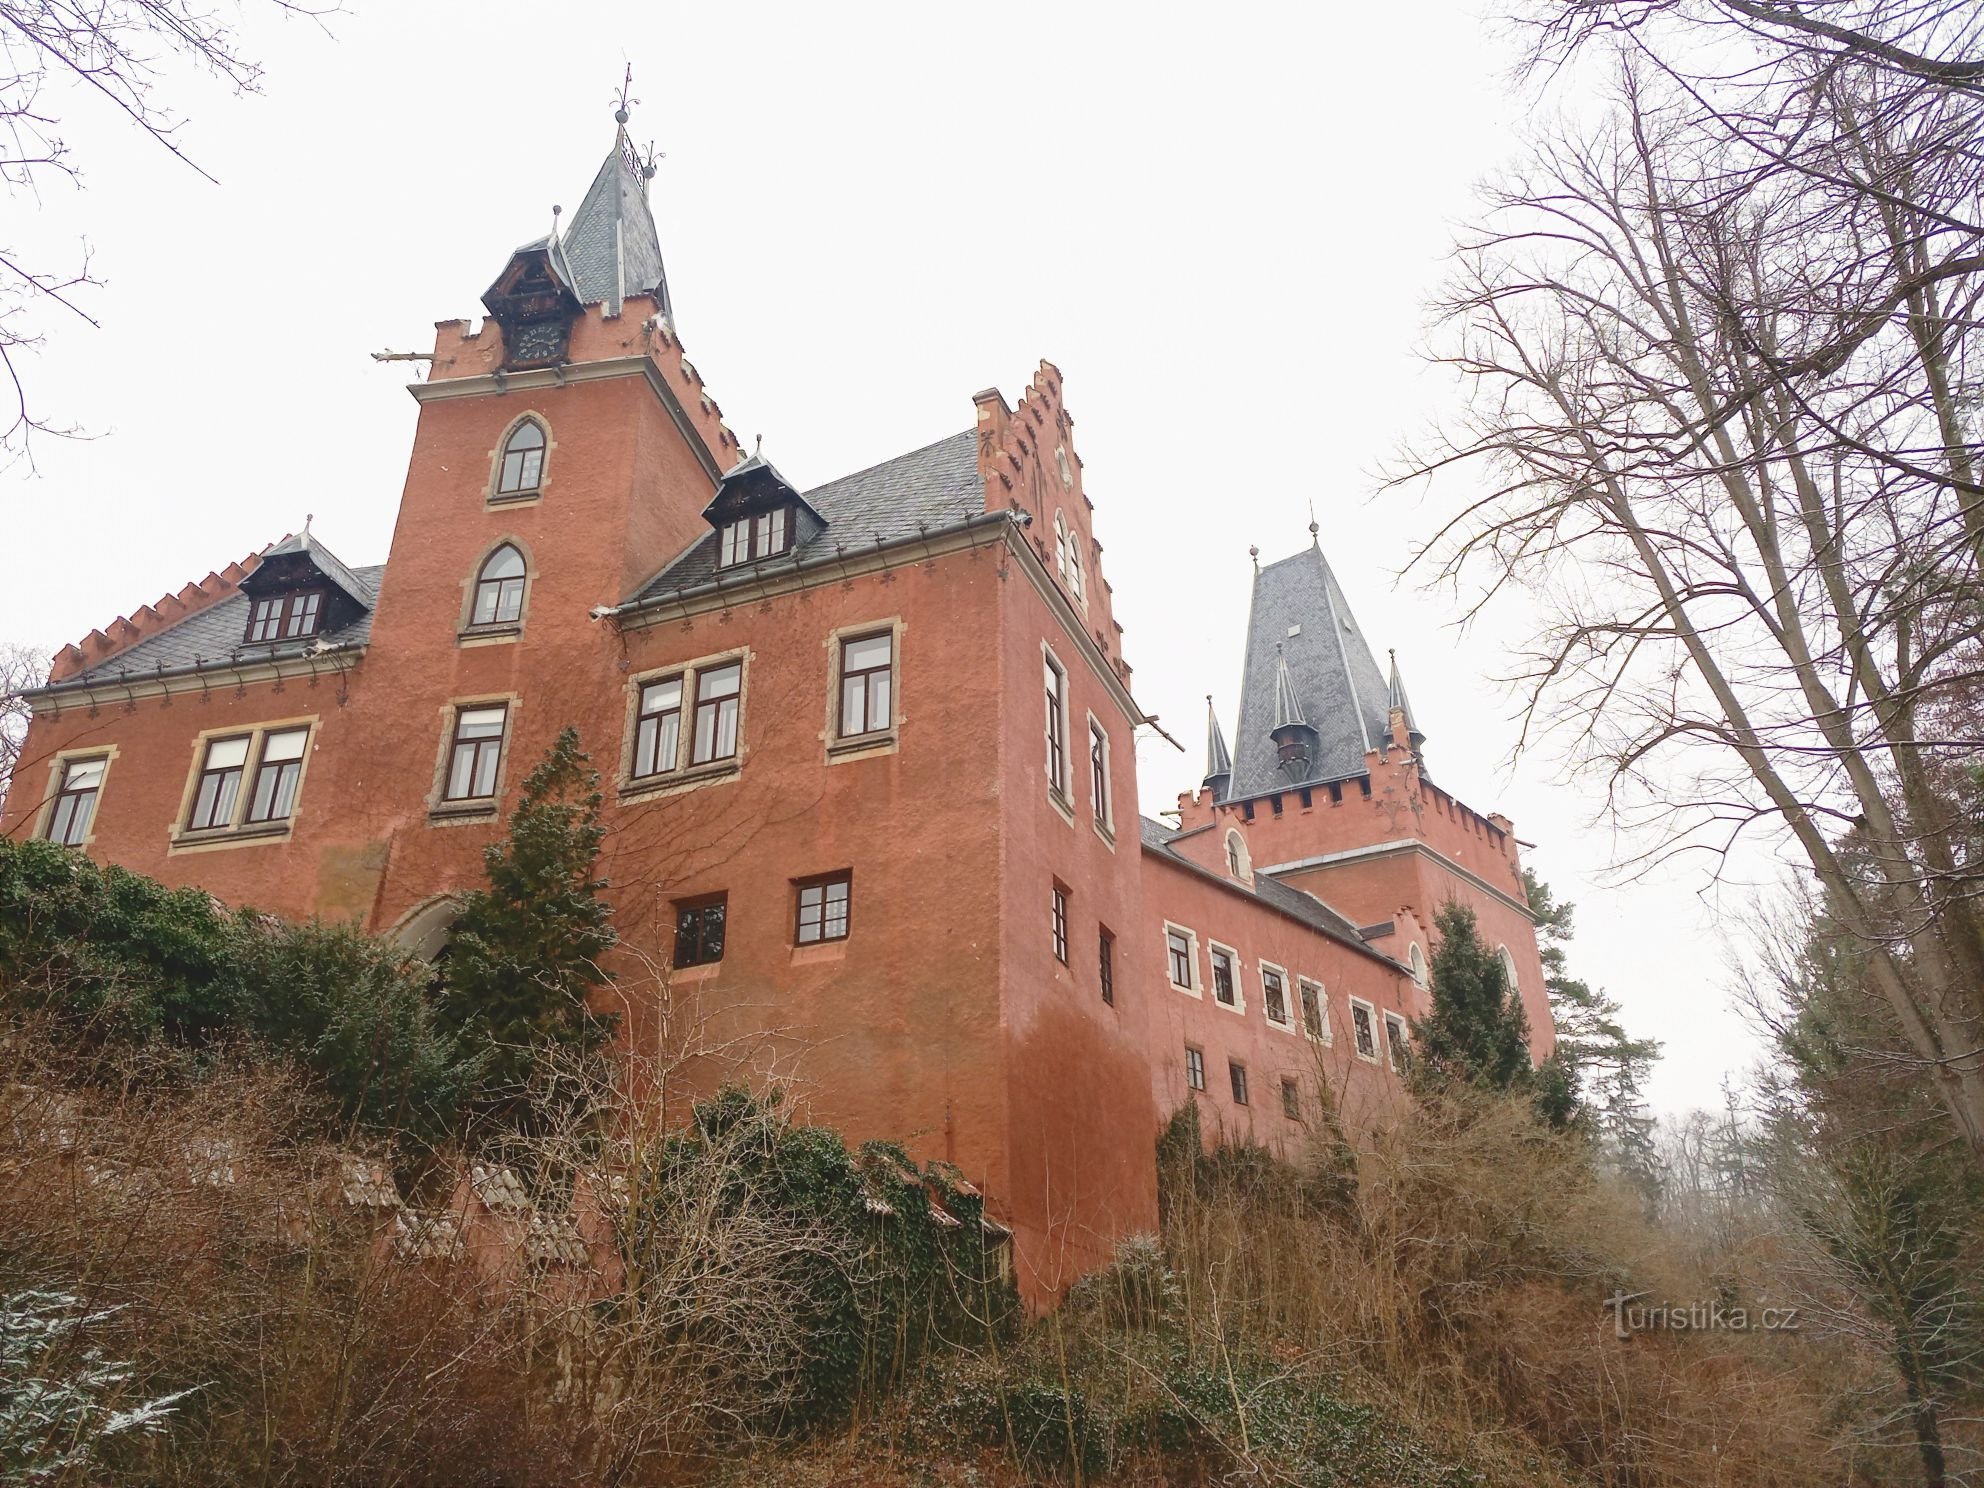 3. Het kasteel van Červený Hrádek is misschien genoemd naar de bekleding of de kleur van het pleisterwerk